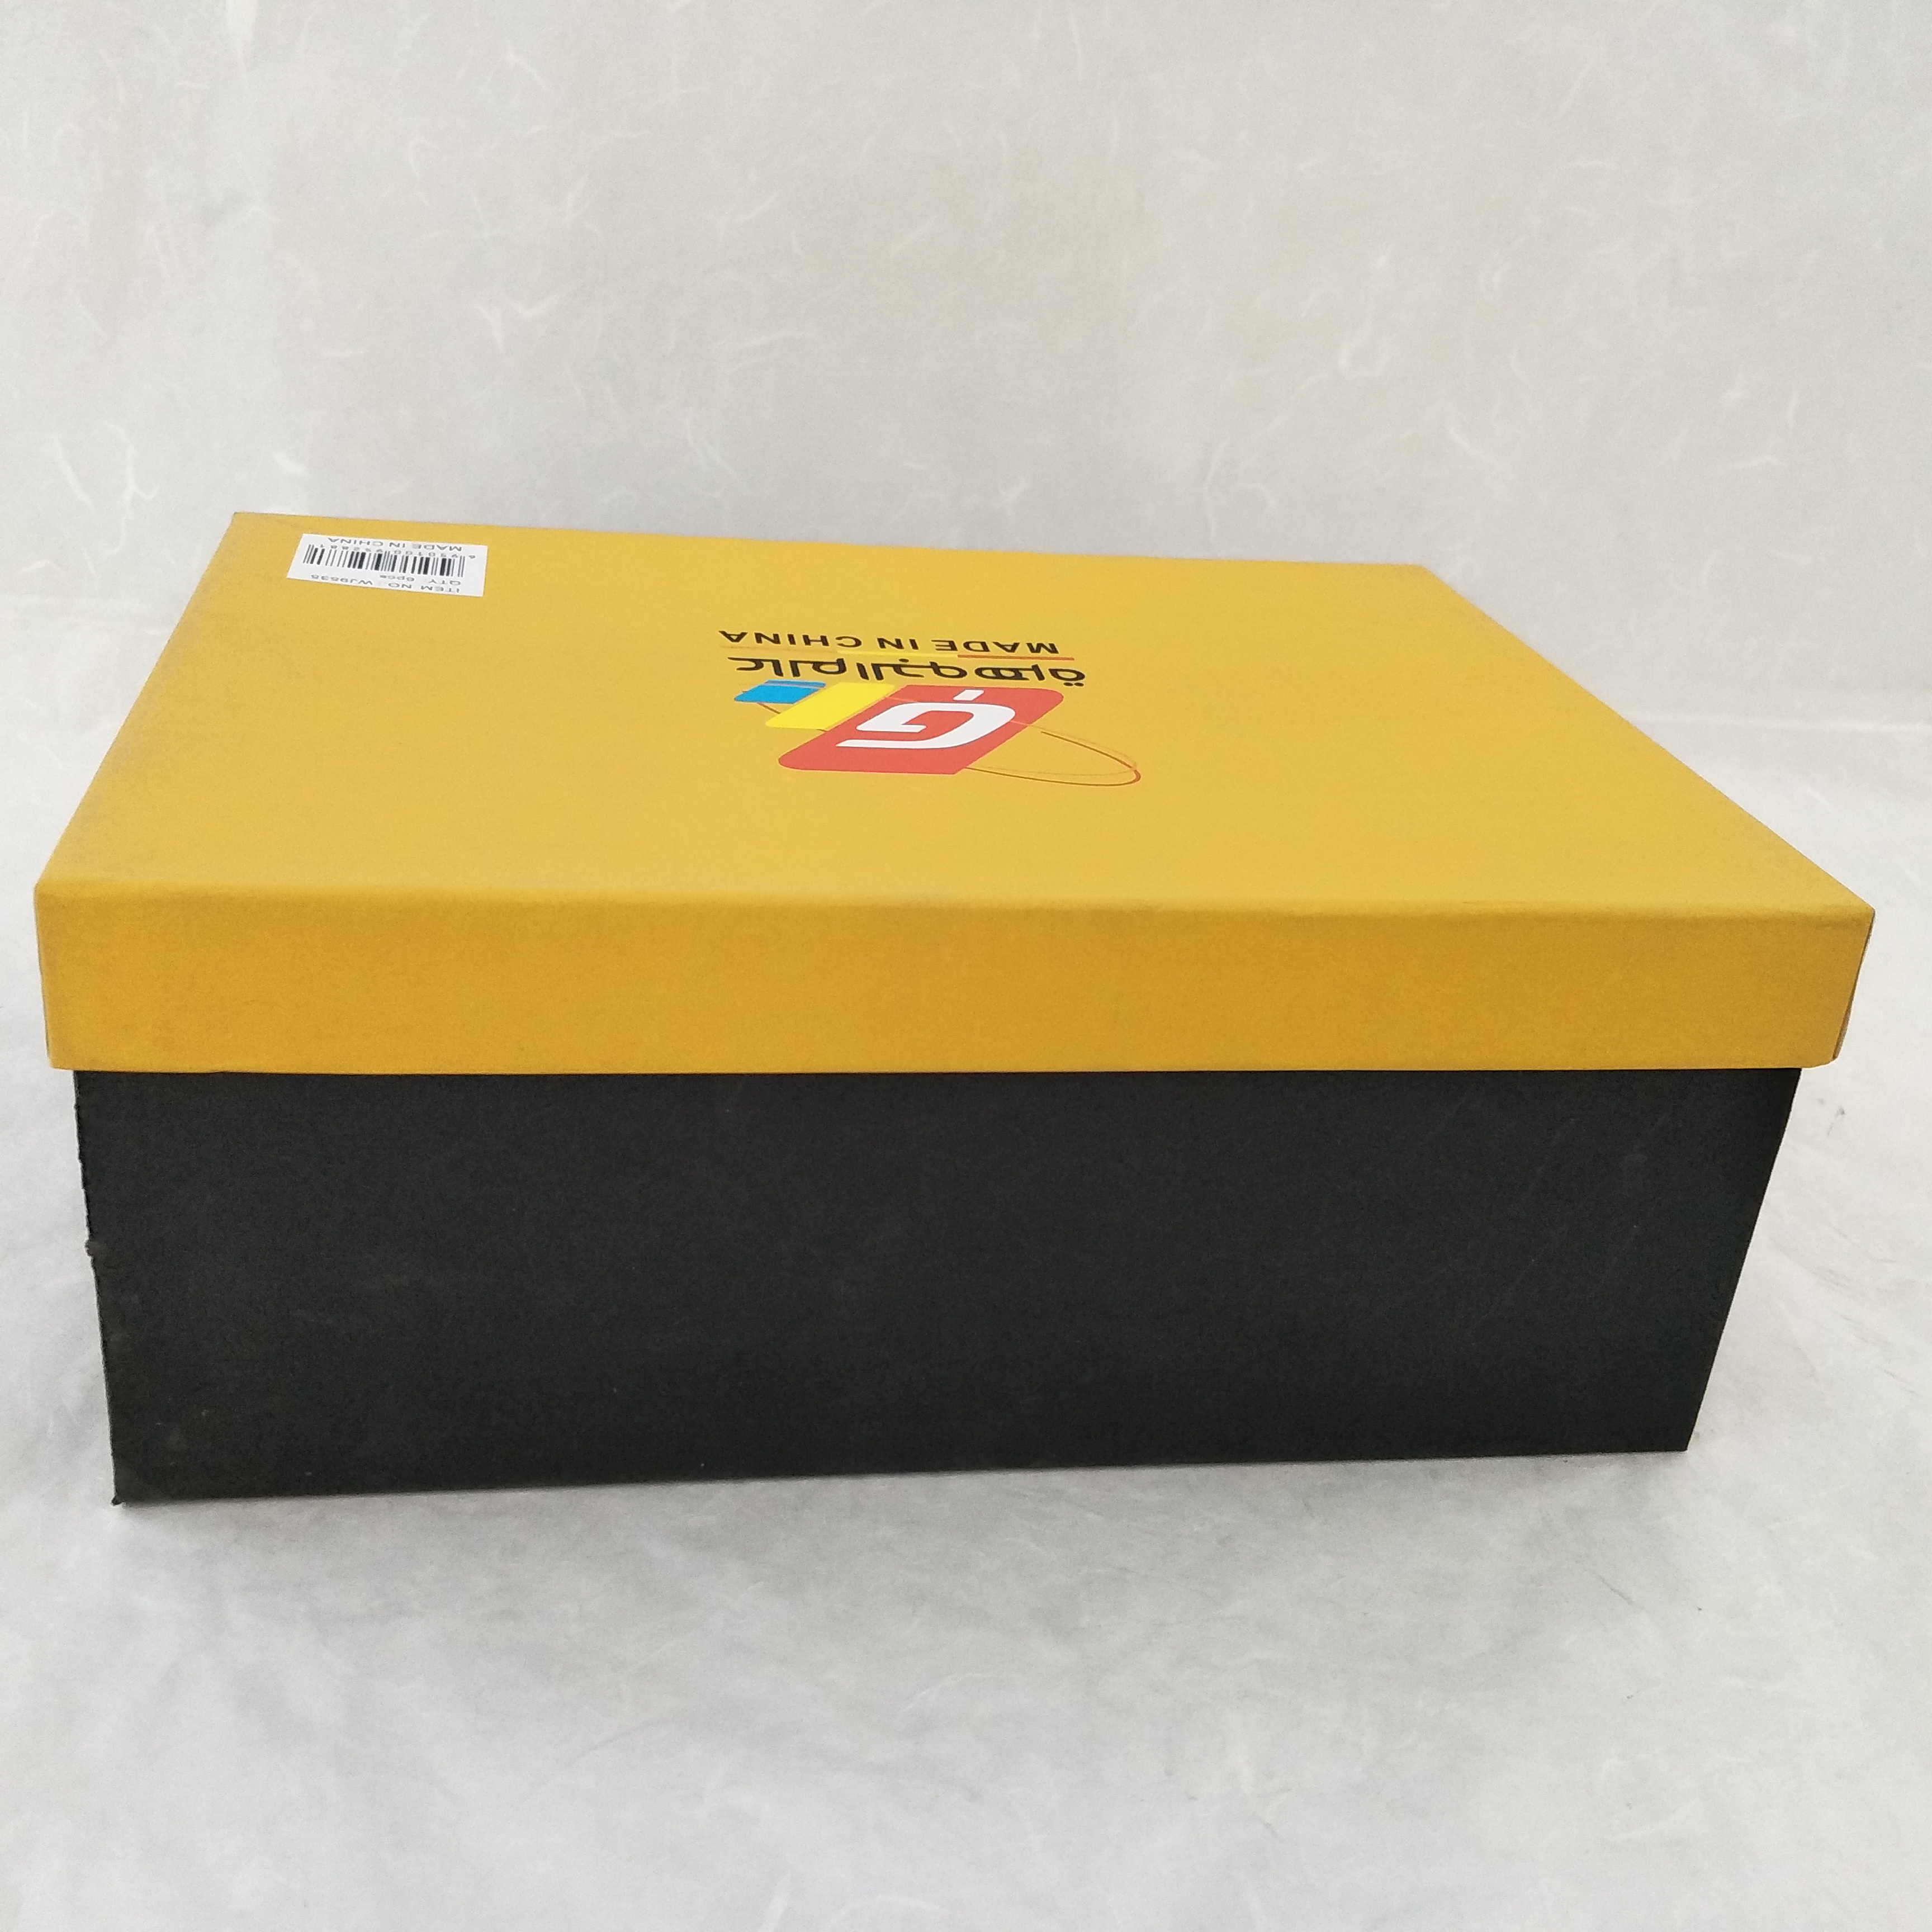 厂家直销 天地盖精美鞋盒批发    生日礼物包装盒 化妆品包装盒 糖果盒